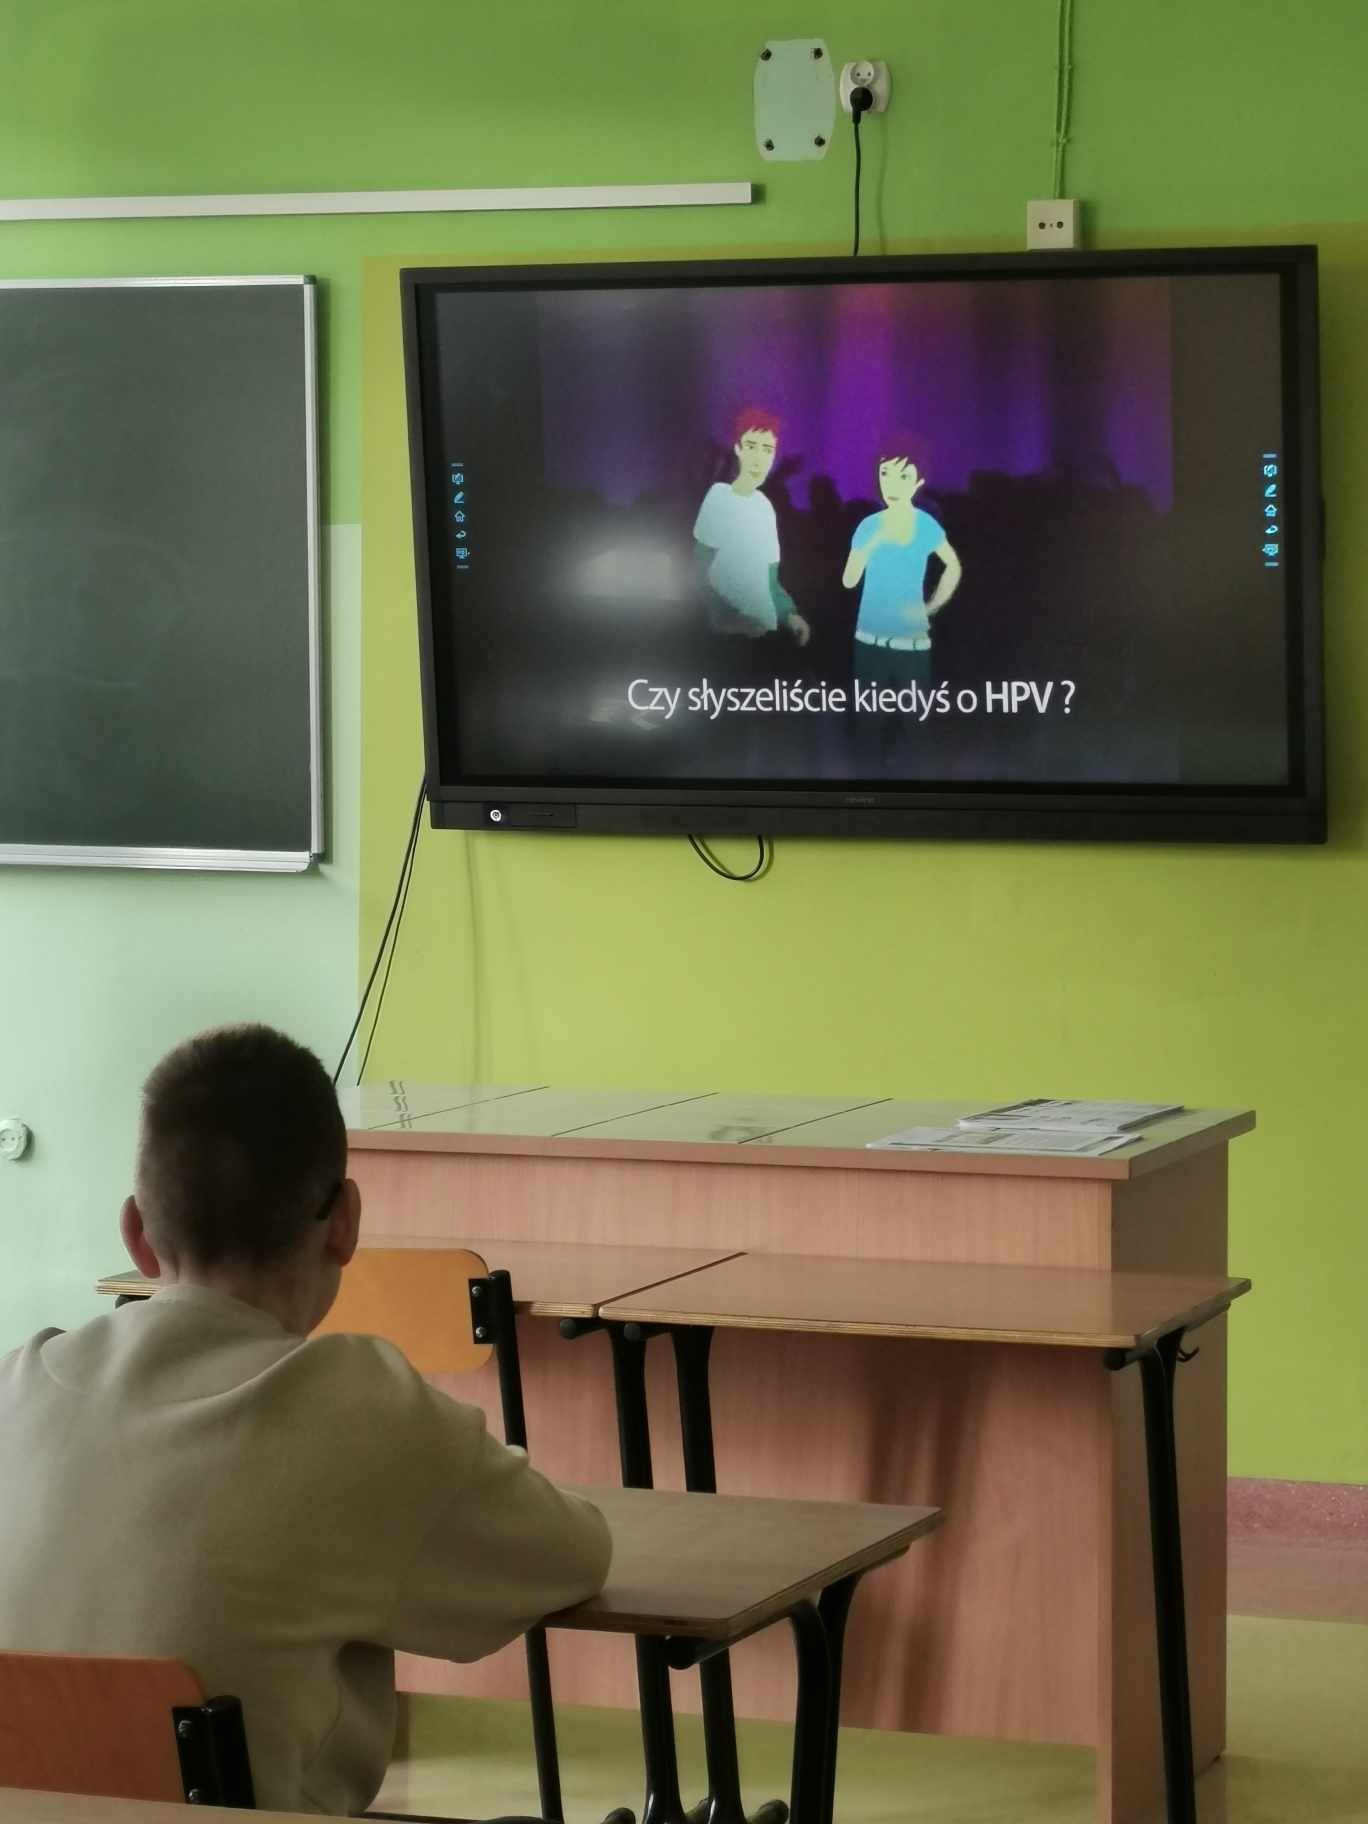 Uczeń  odwrócony od aparatu plecami oglądają prezentację